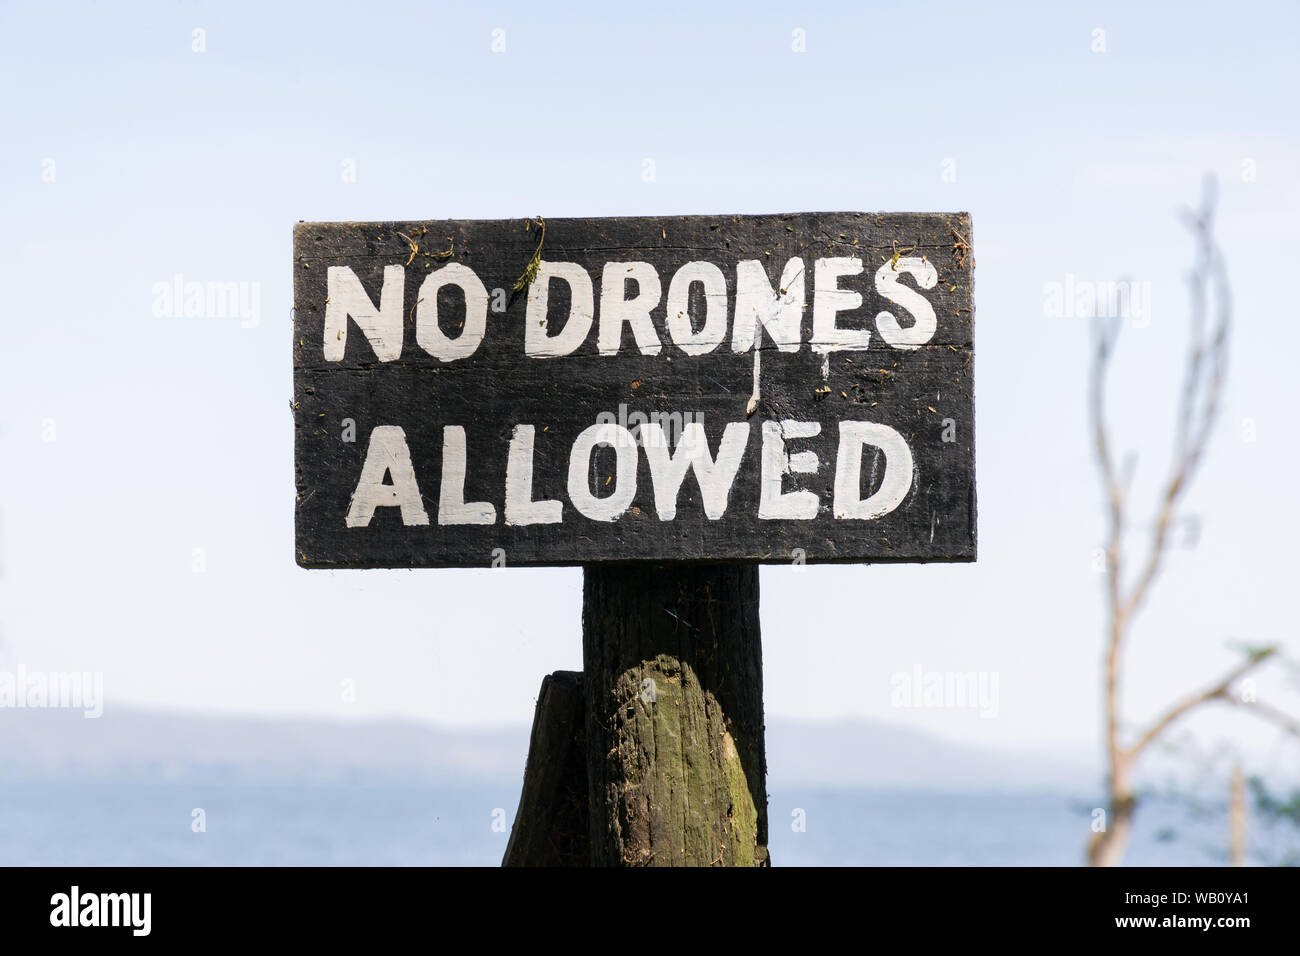 A wooden No Drones Allowed warning sign, lake Naivasha, Kenya Stock Photo